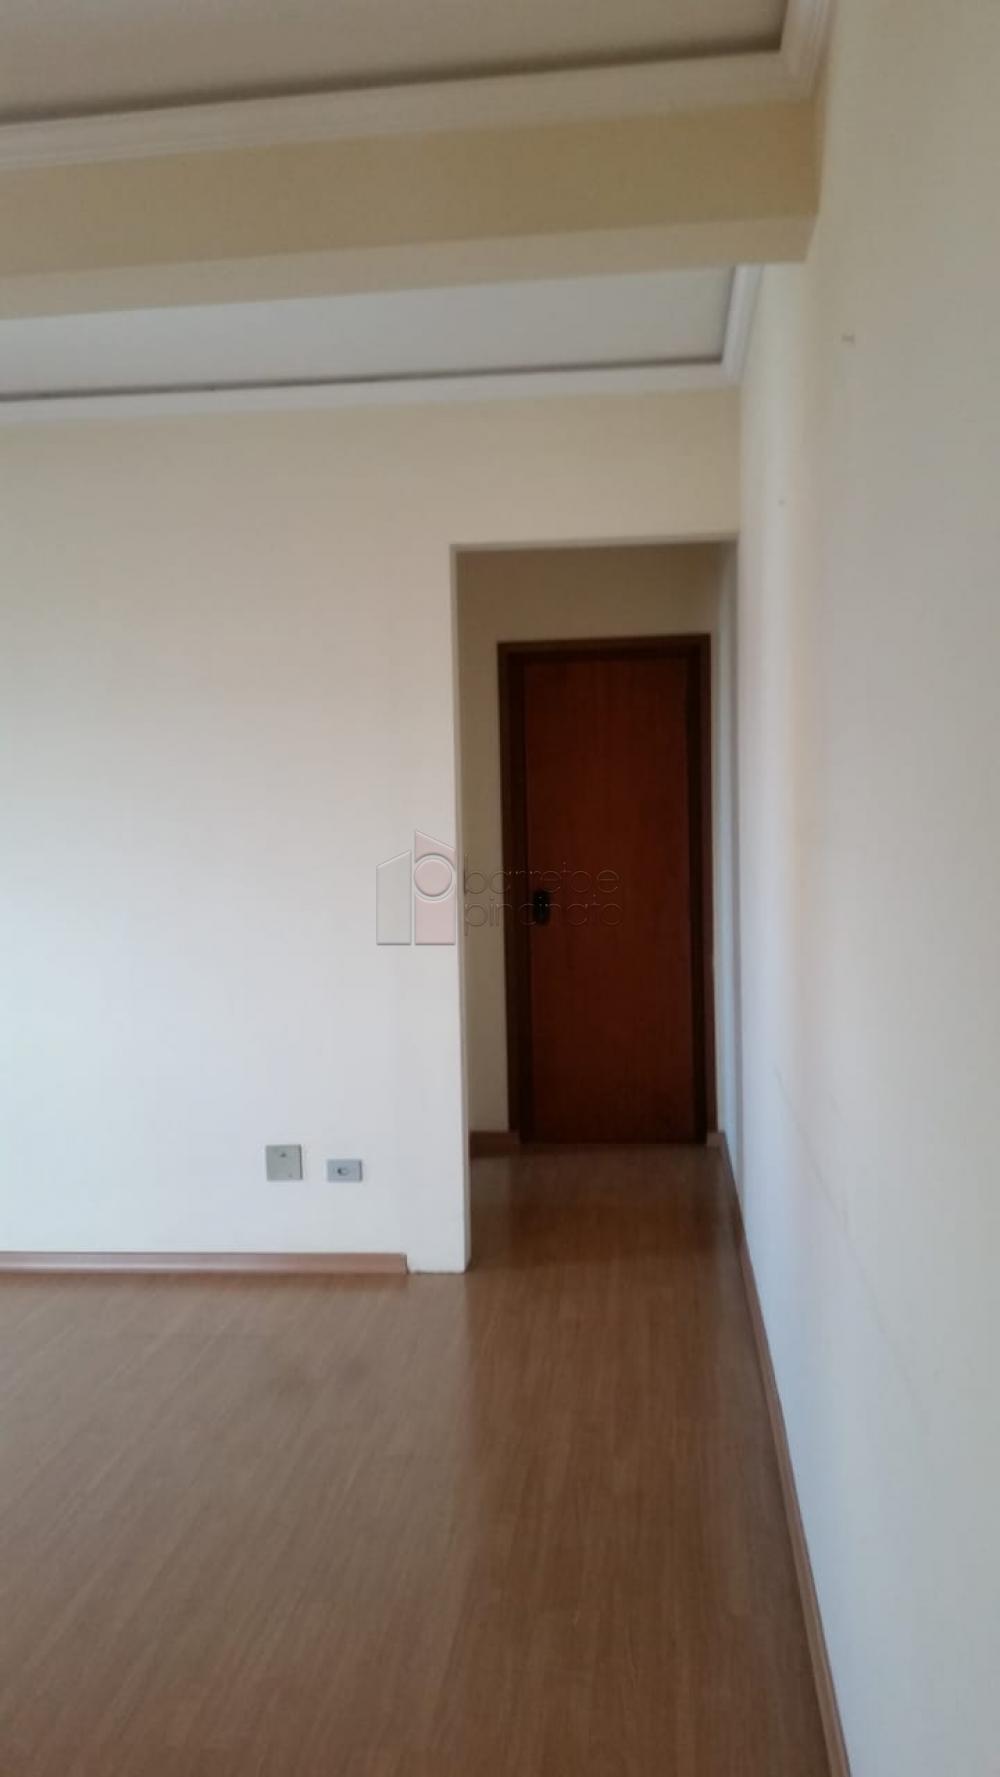 Alugar Apartamento / Padrão em Jundiaí R$ 1.500,00 - Foto 1